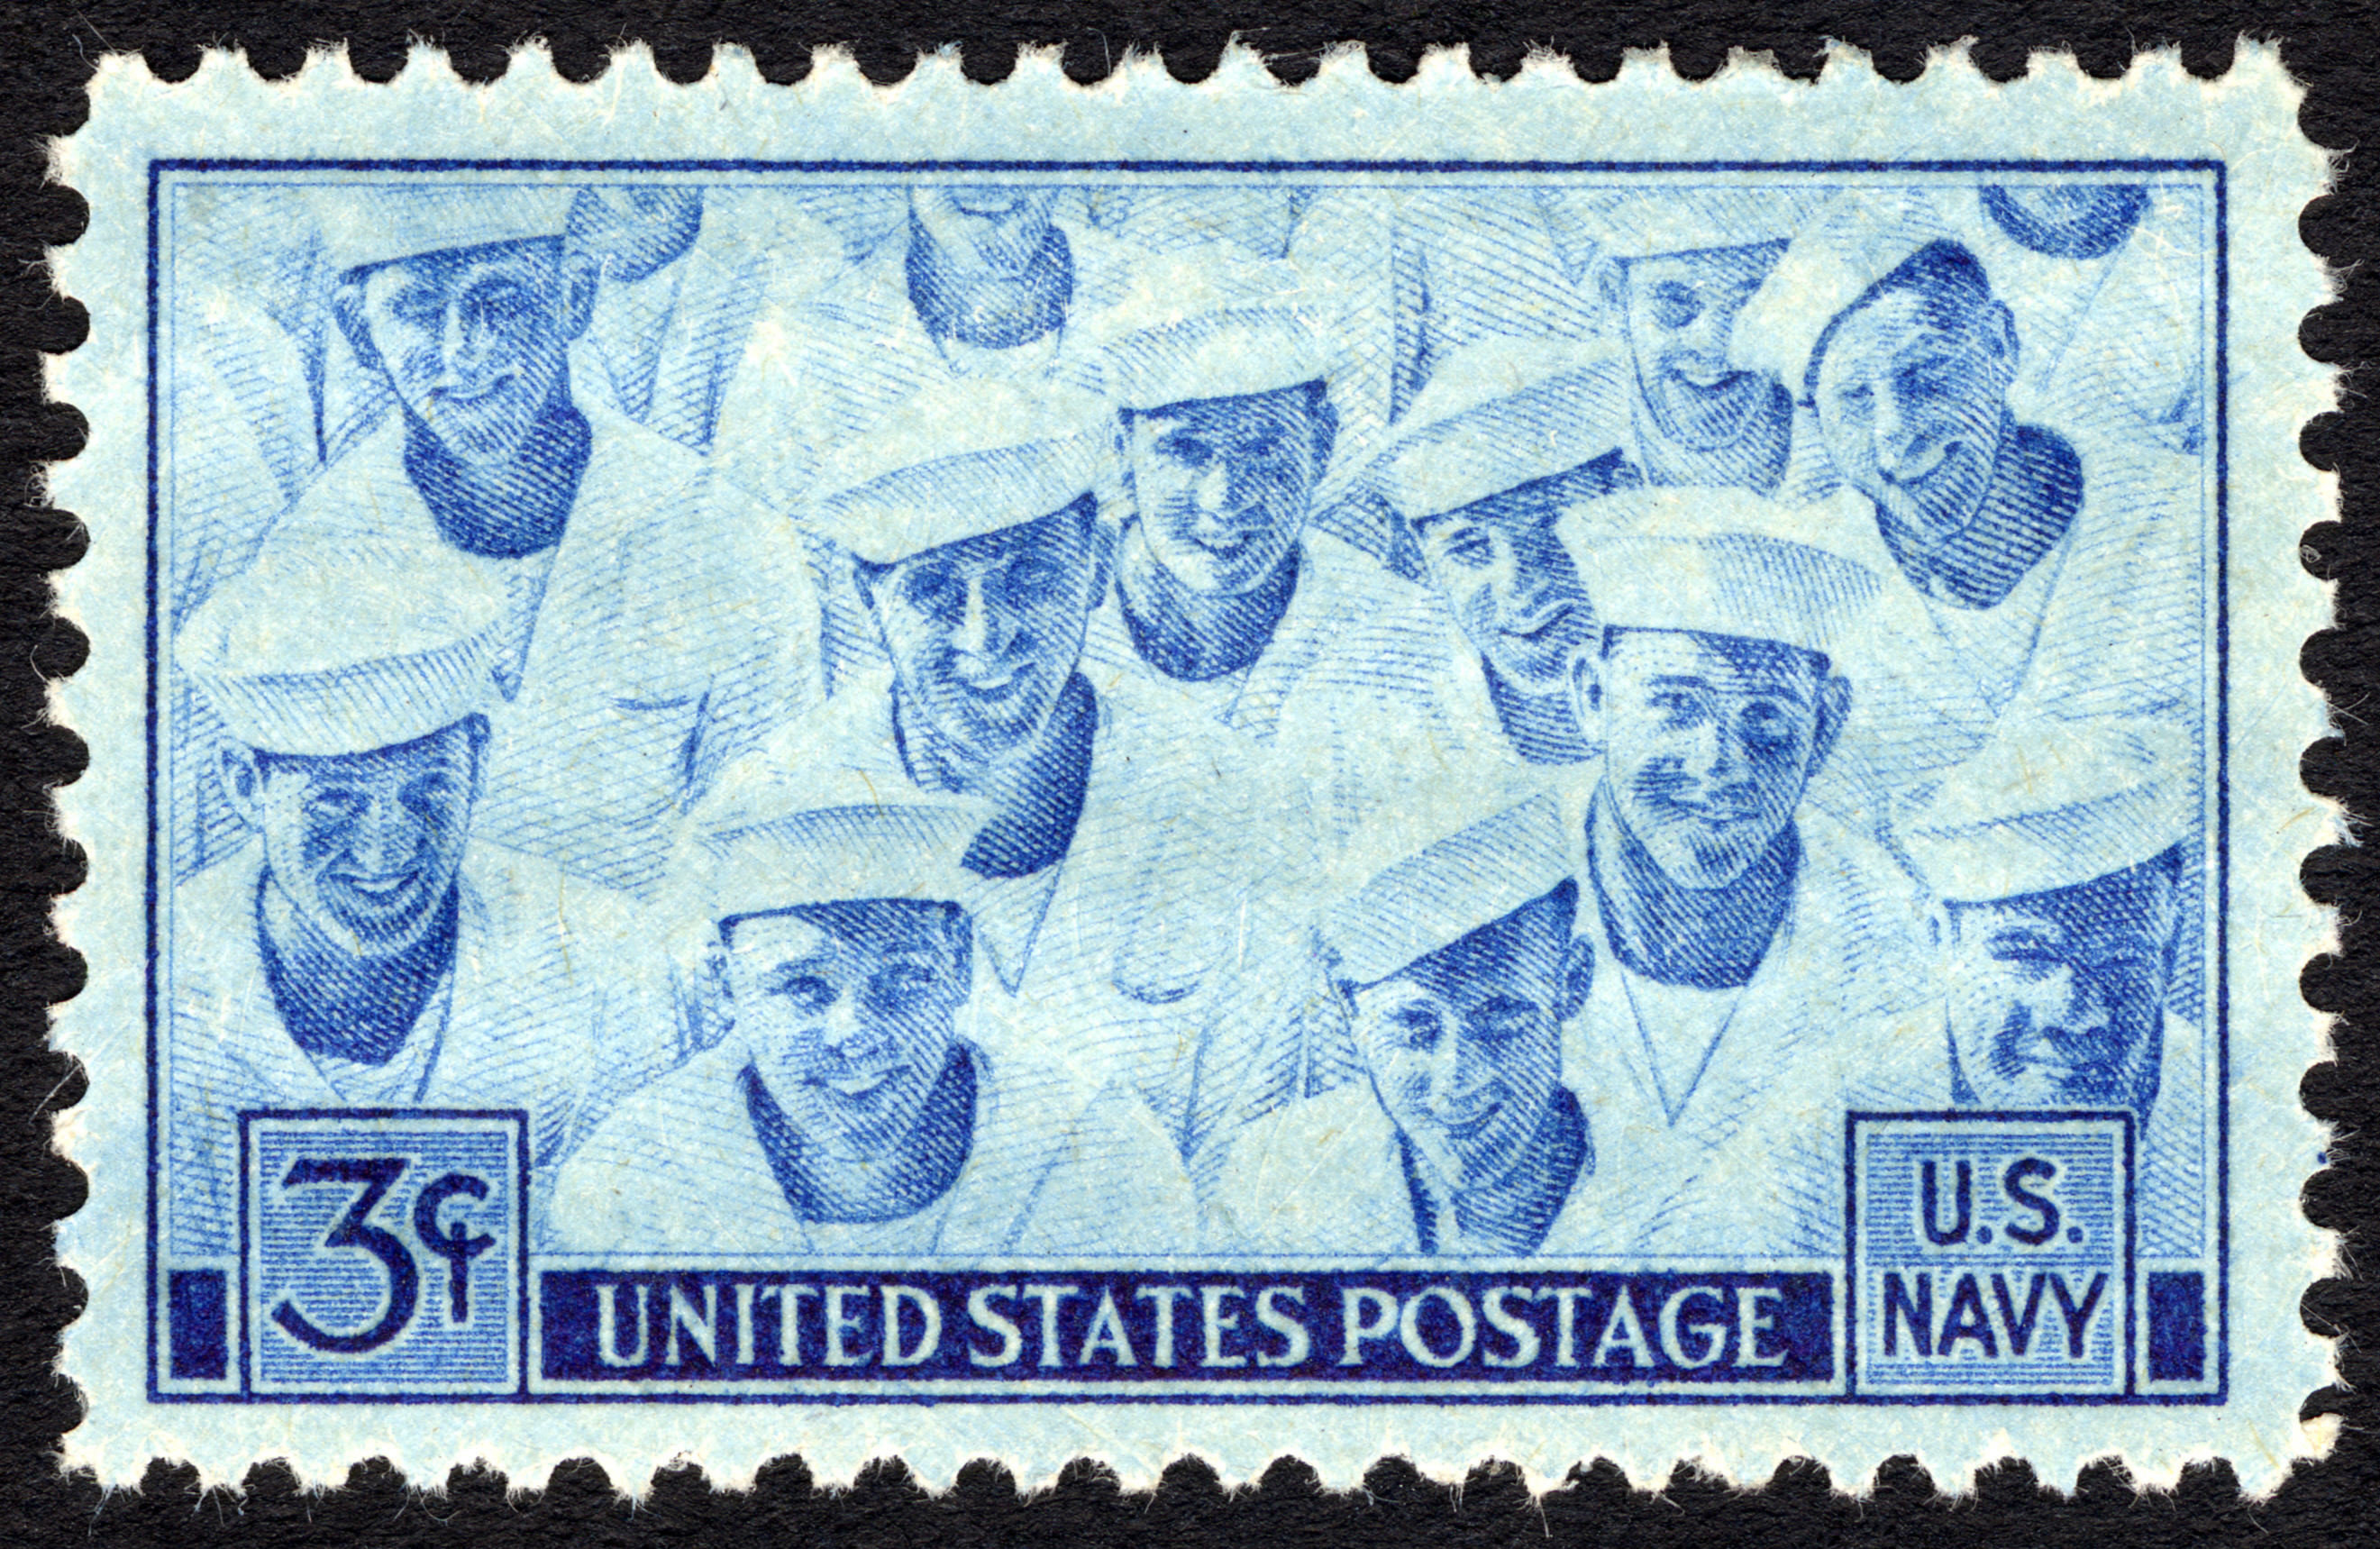 Navy 3c 1945 issue U.S. stamp